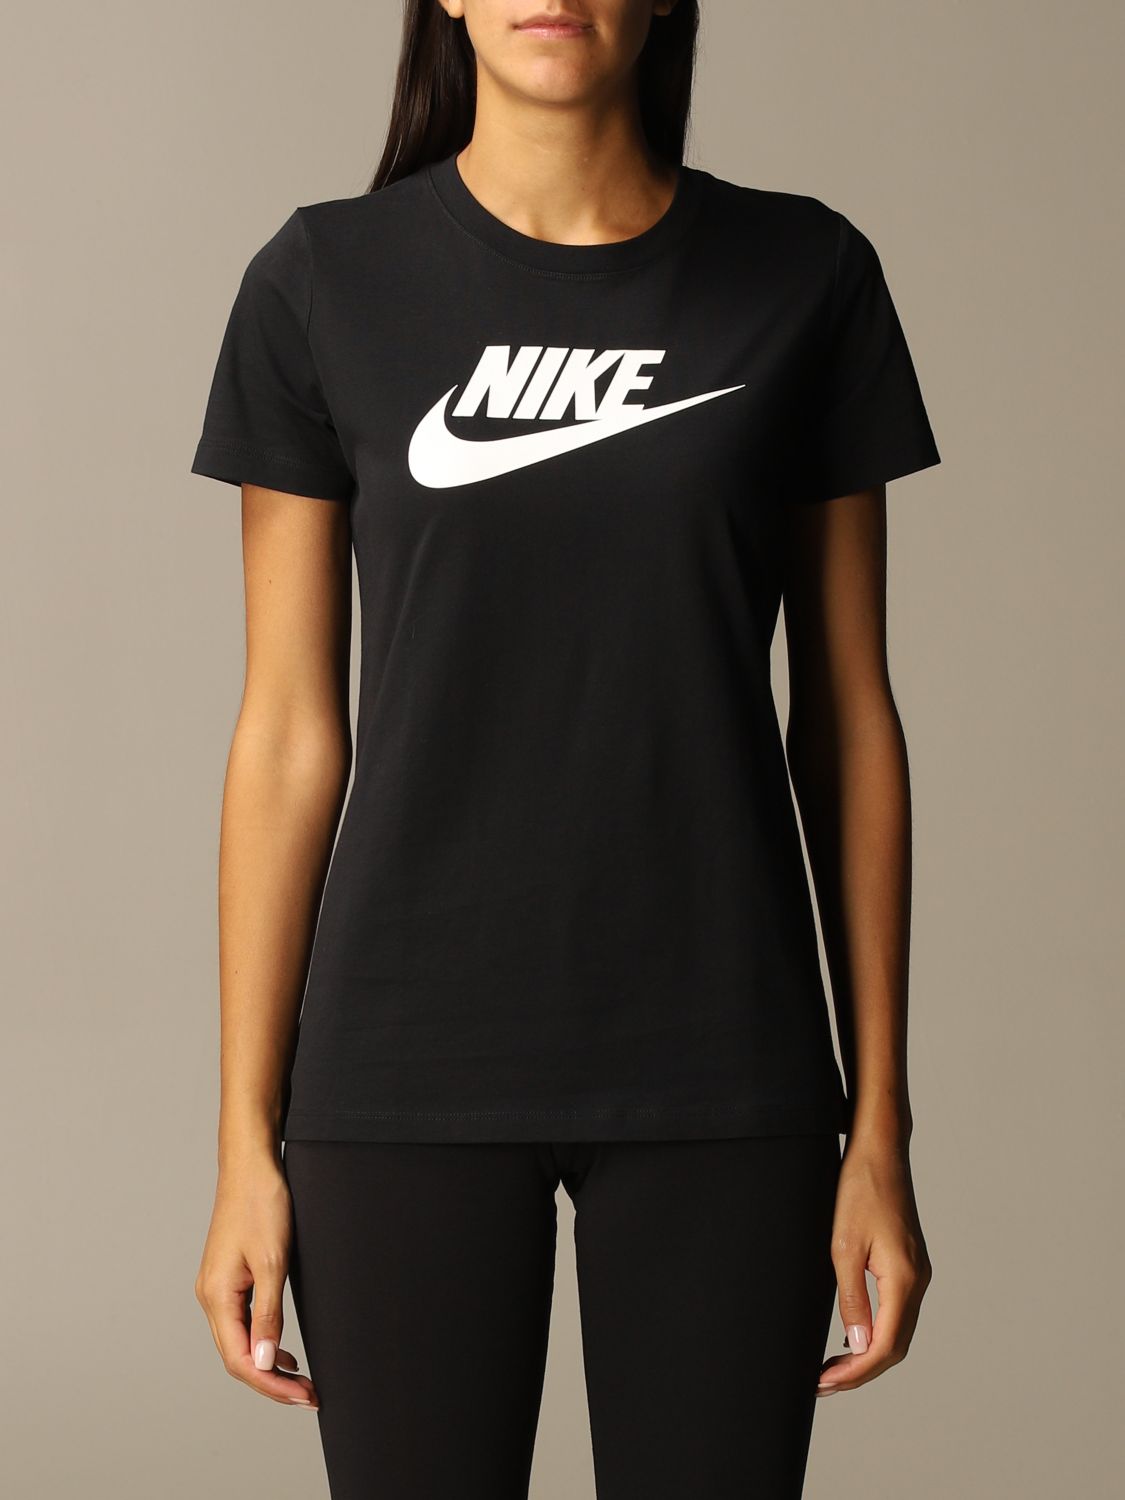 NIKE: T-shirt Black | Nike t-shirt BV6169 online on GIGLIO.COM